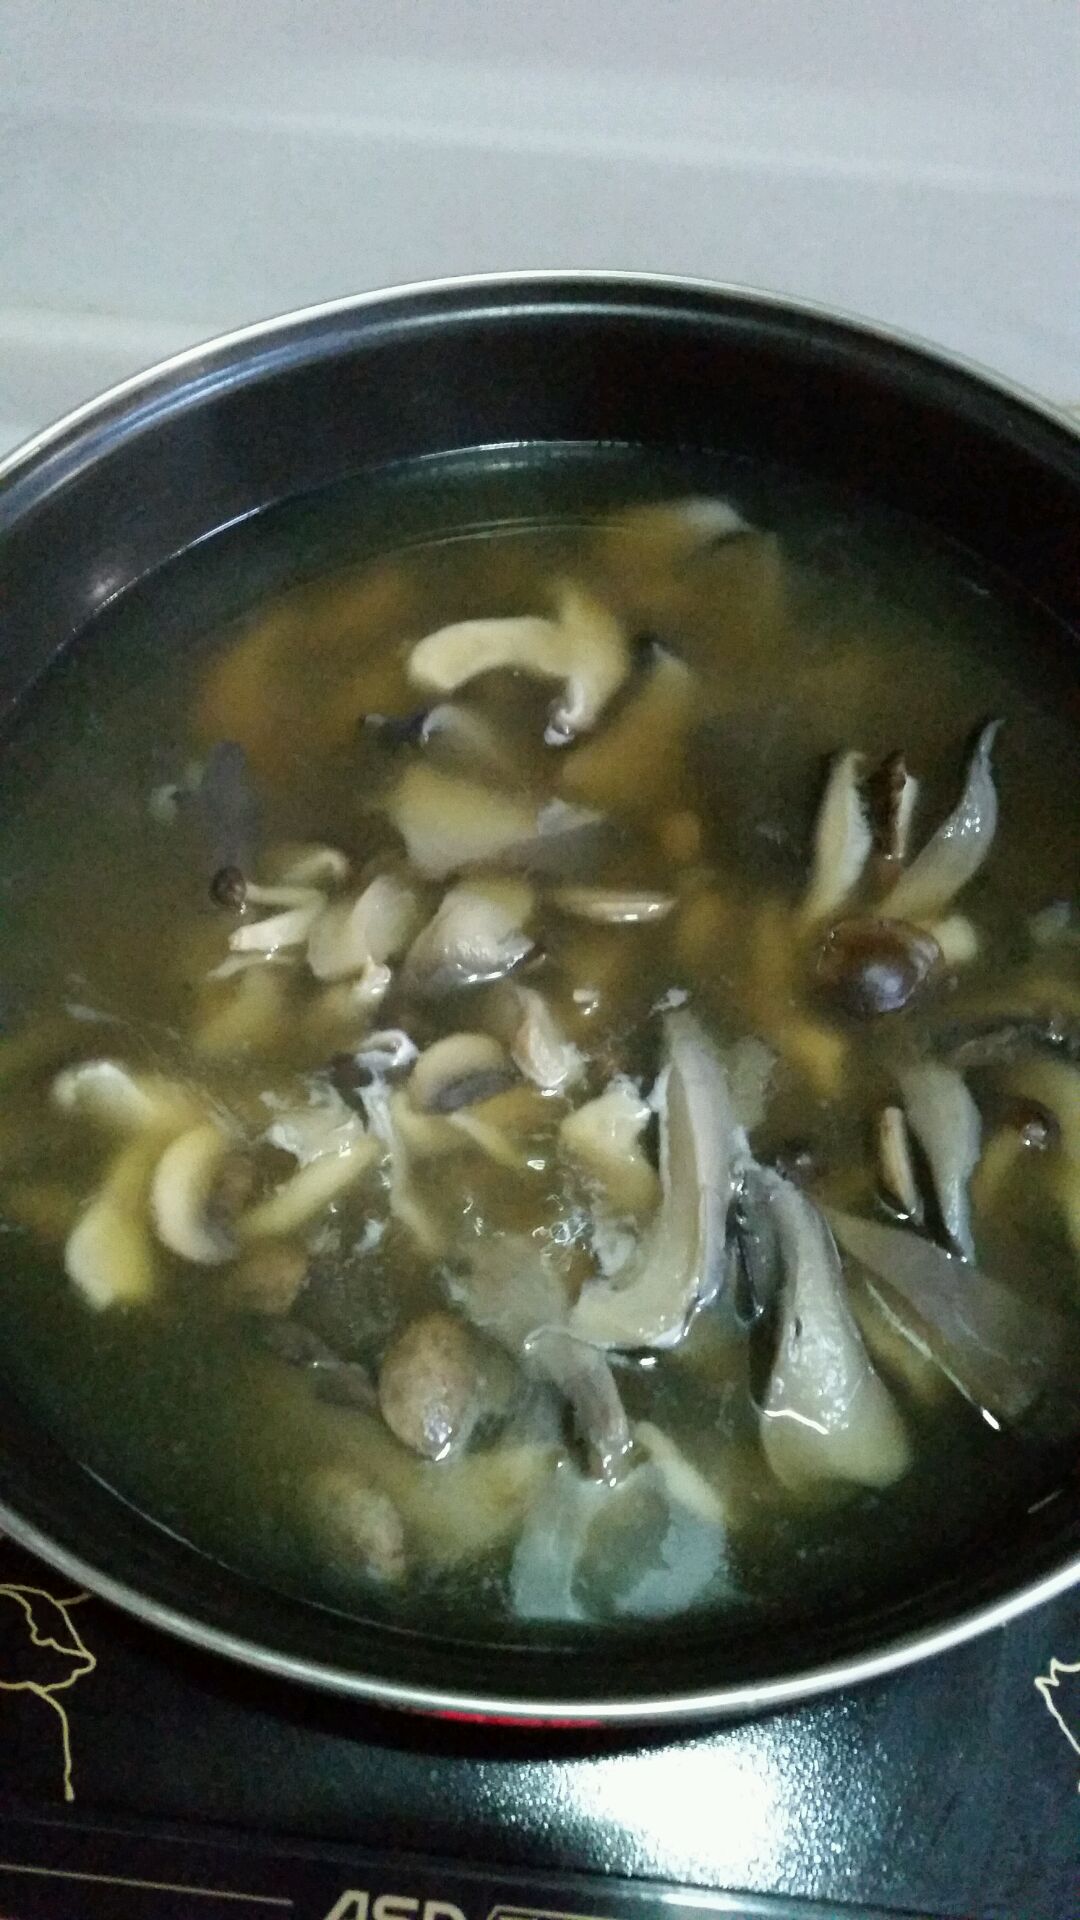 奶油蘑菇浓汤的做法_【图解】奶油蘑菇浓汤怎么做如何做好吃_奶油蘑菇浓汤家常做法大全_yiyi妈妈_豆果美食